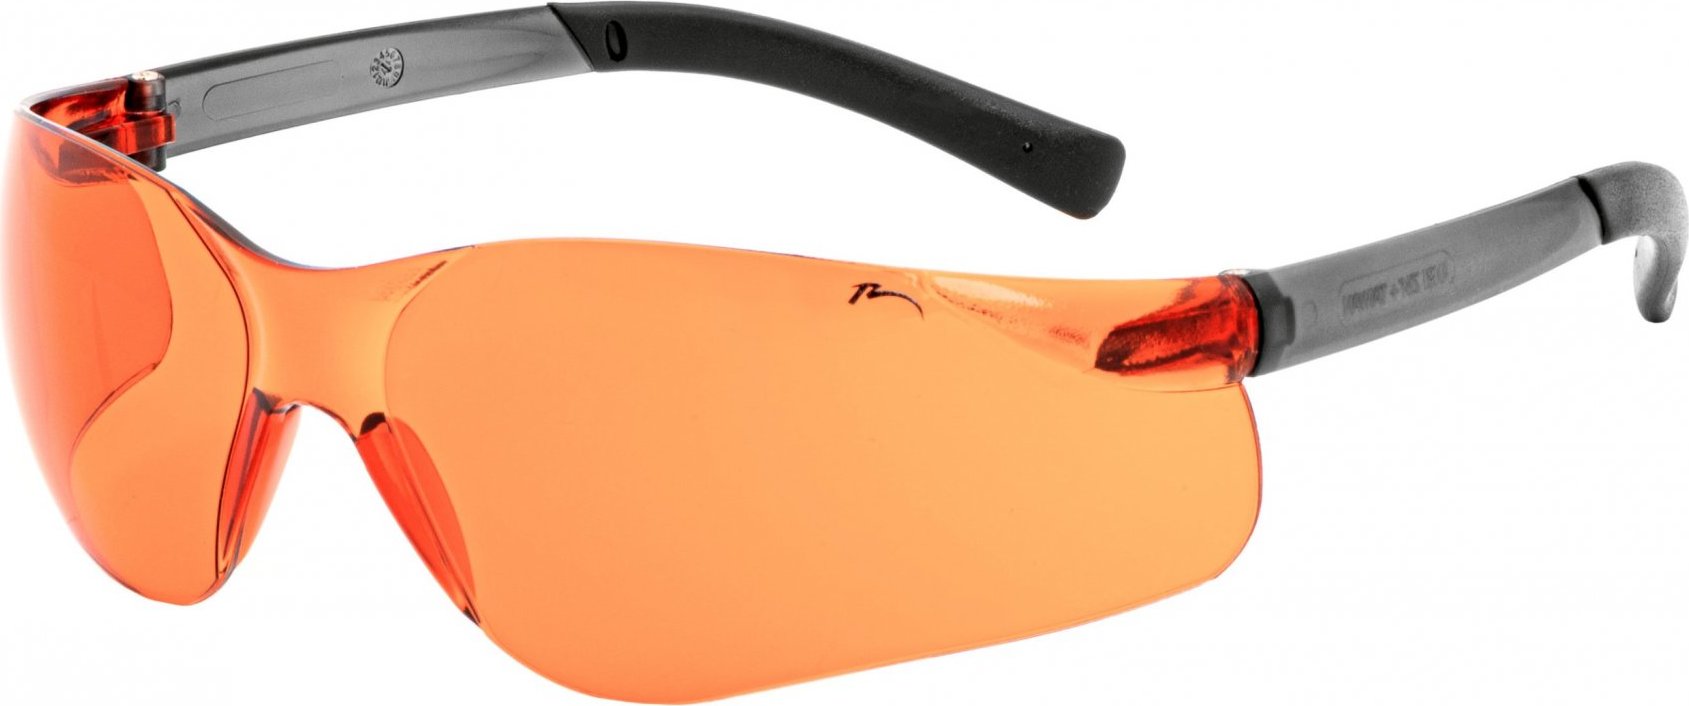 Sportovní sluneční brýle RELAX Wake oranžové